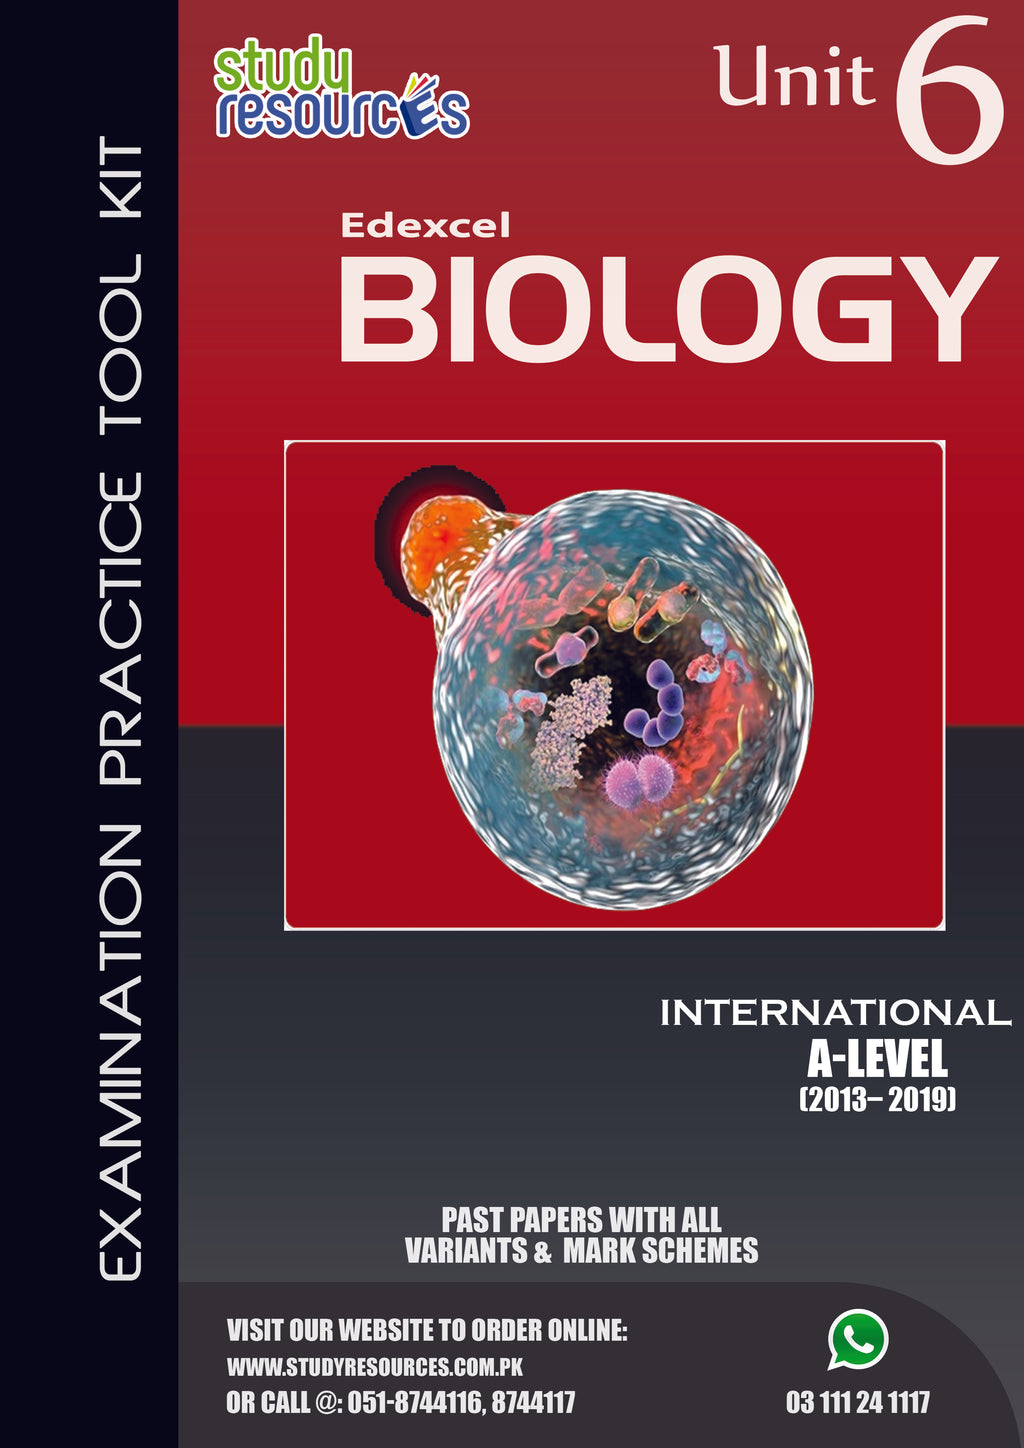 Edexcel A-Level Biology Unit-6 Past Papers (2013-2019)